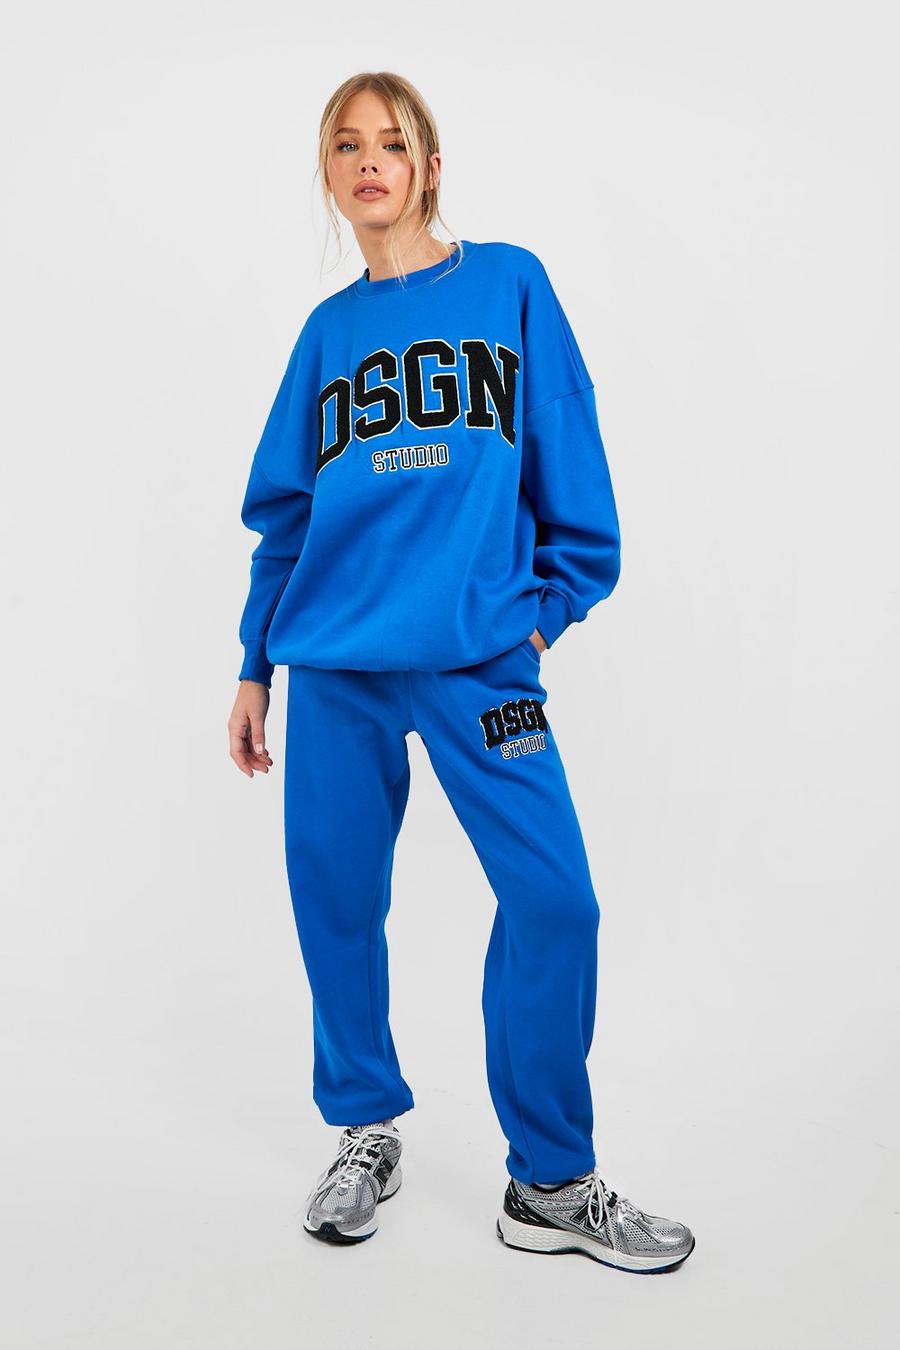 Cobalt Dsgn Studio Towelling Applique Sweatshirt Tracksuit 